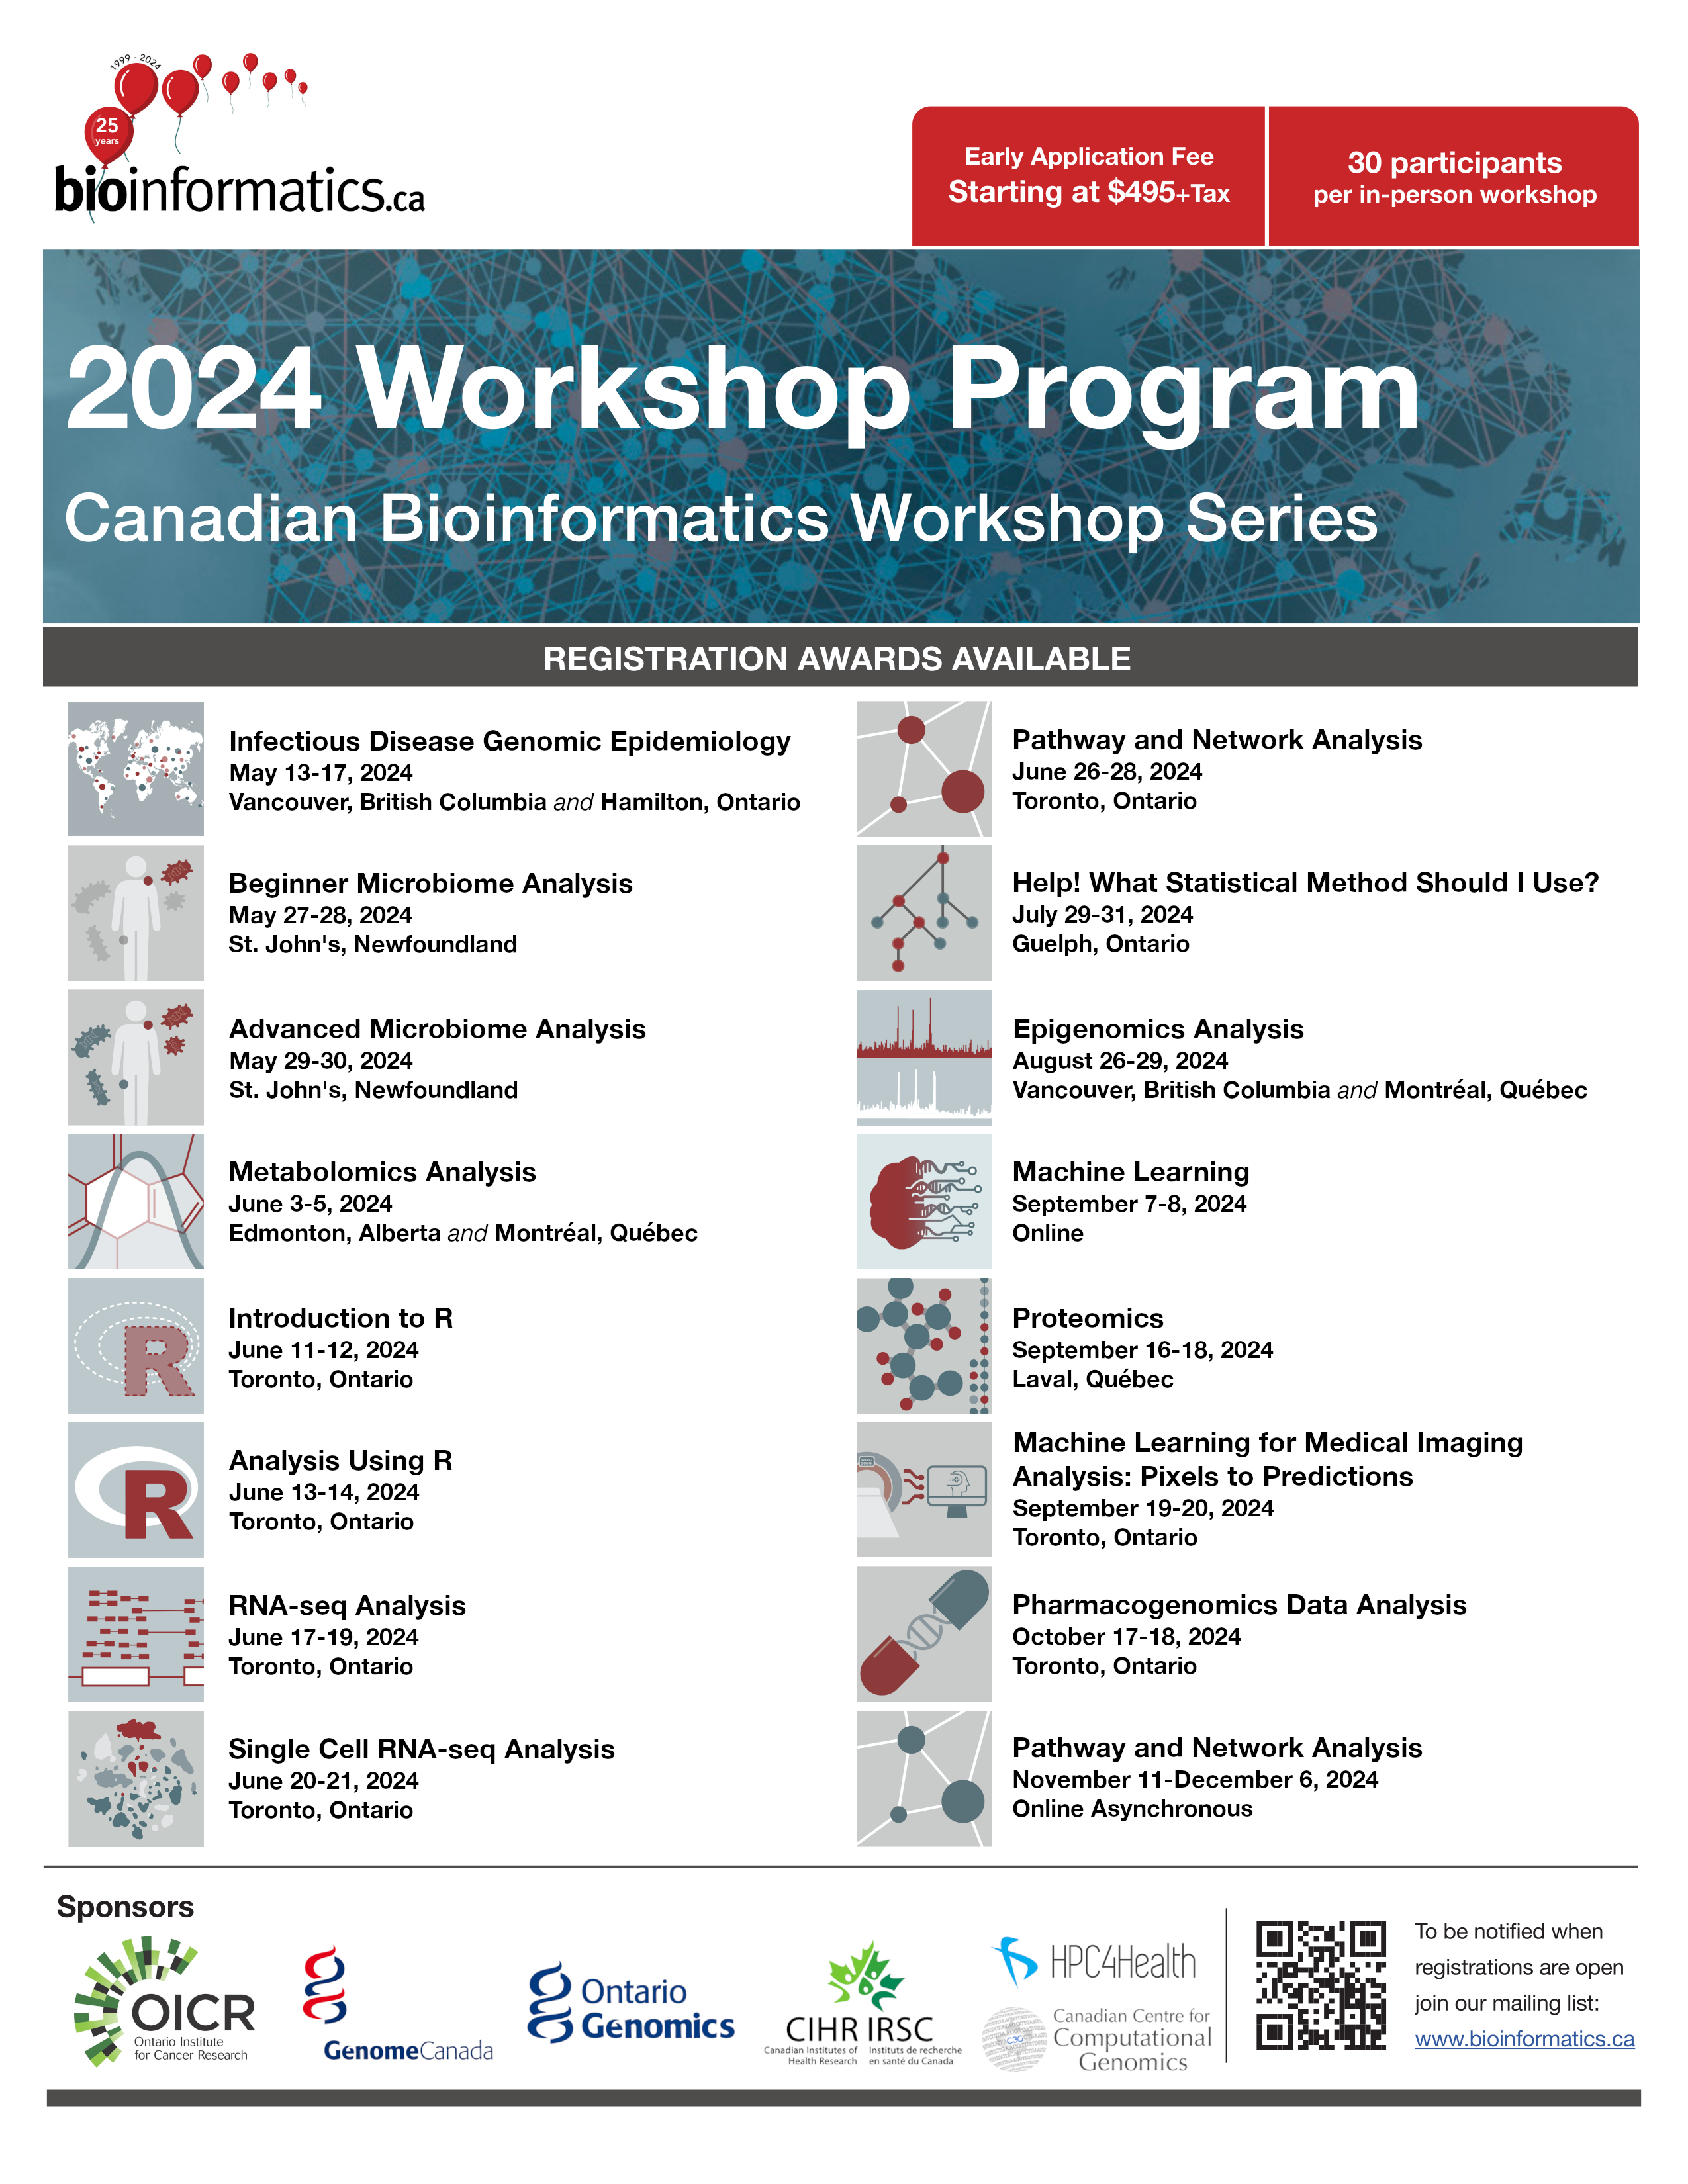 A flyer describing the 2024 Canadian Bioinformatics Workshops, visible at bioinformatics.ca